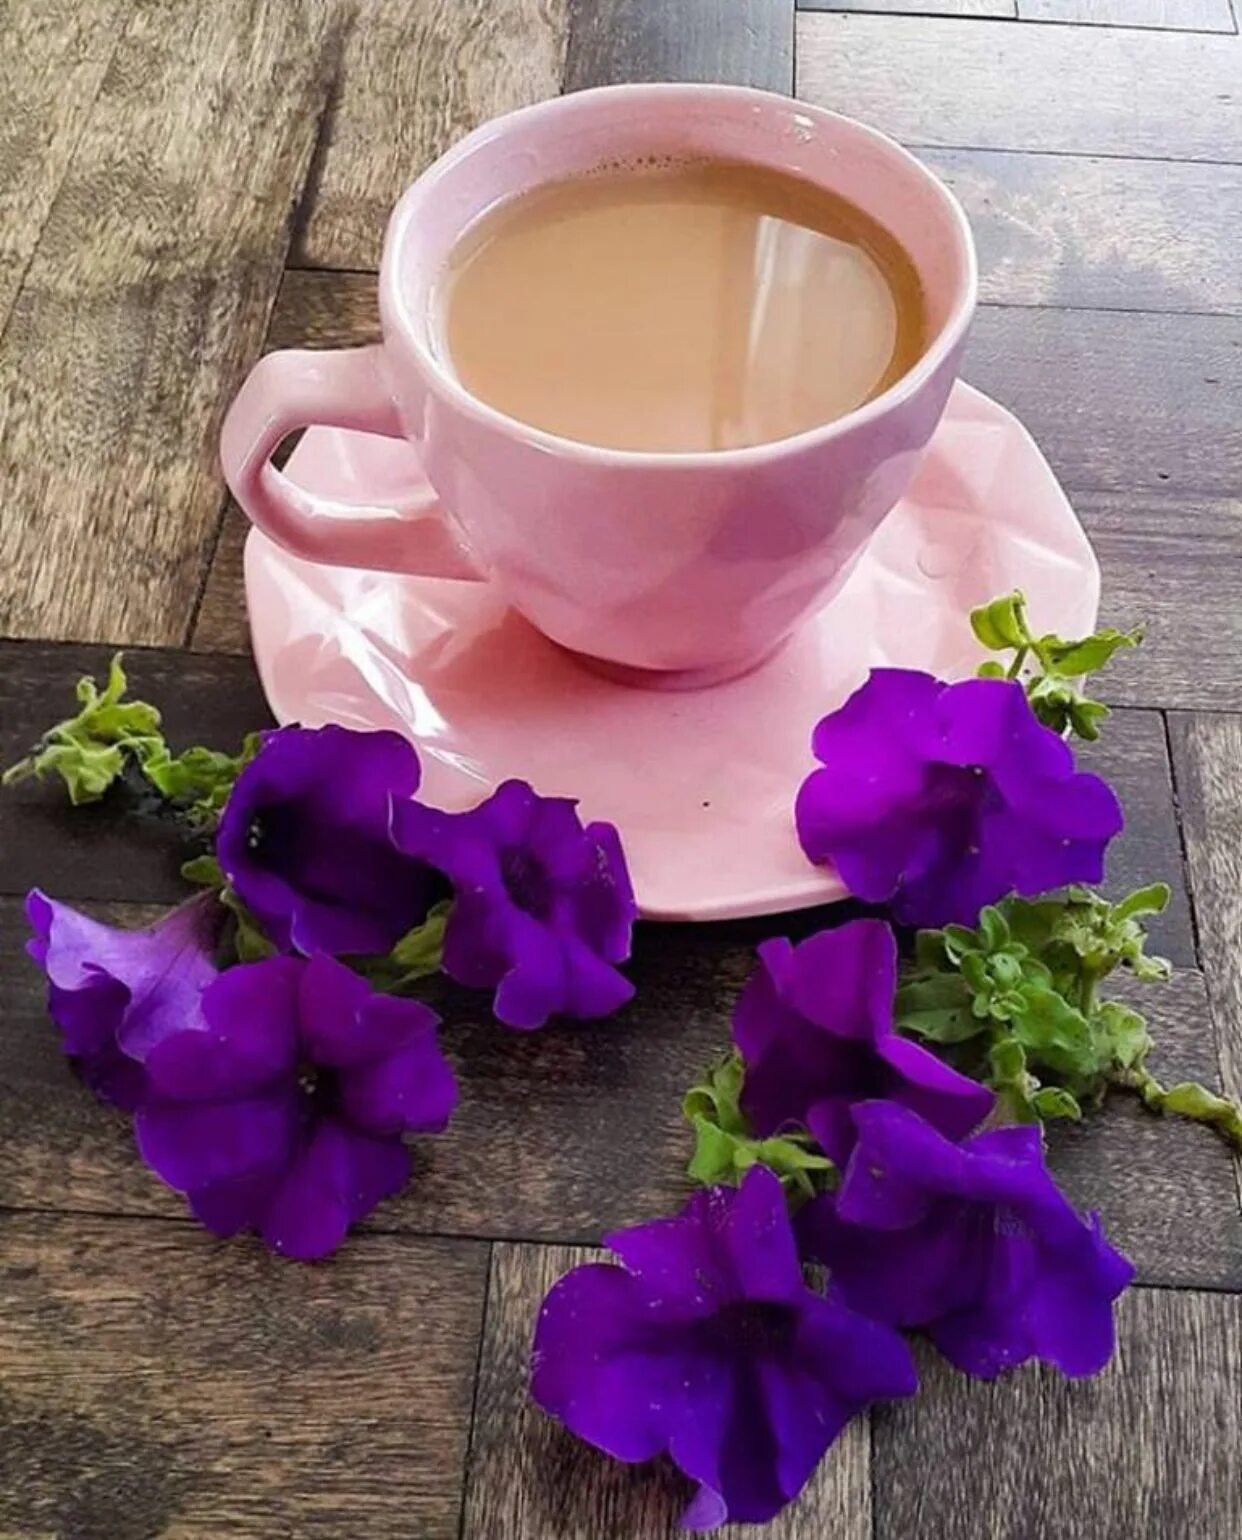 Картинка доброе утро с кофе и цветами. Кофе и цветы. Цветы и кофе с добрым утром. Цветы в чашке. Красивые цветы в чашке.